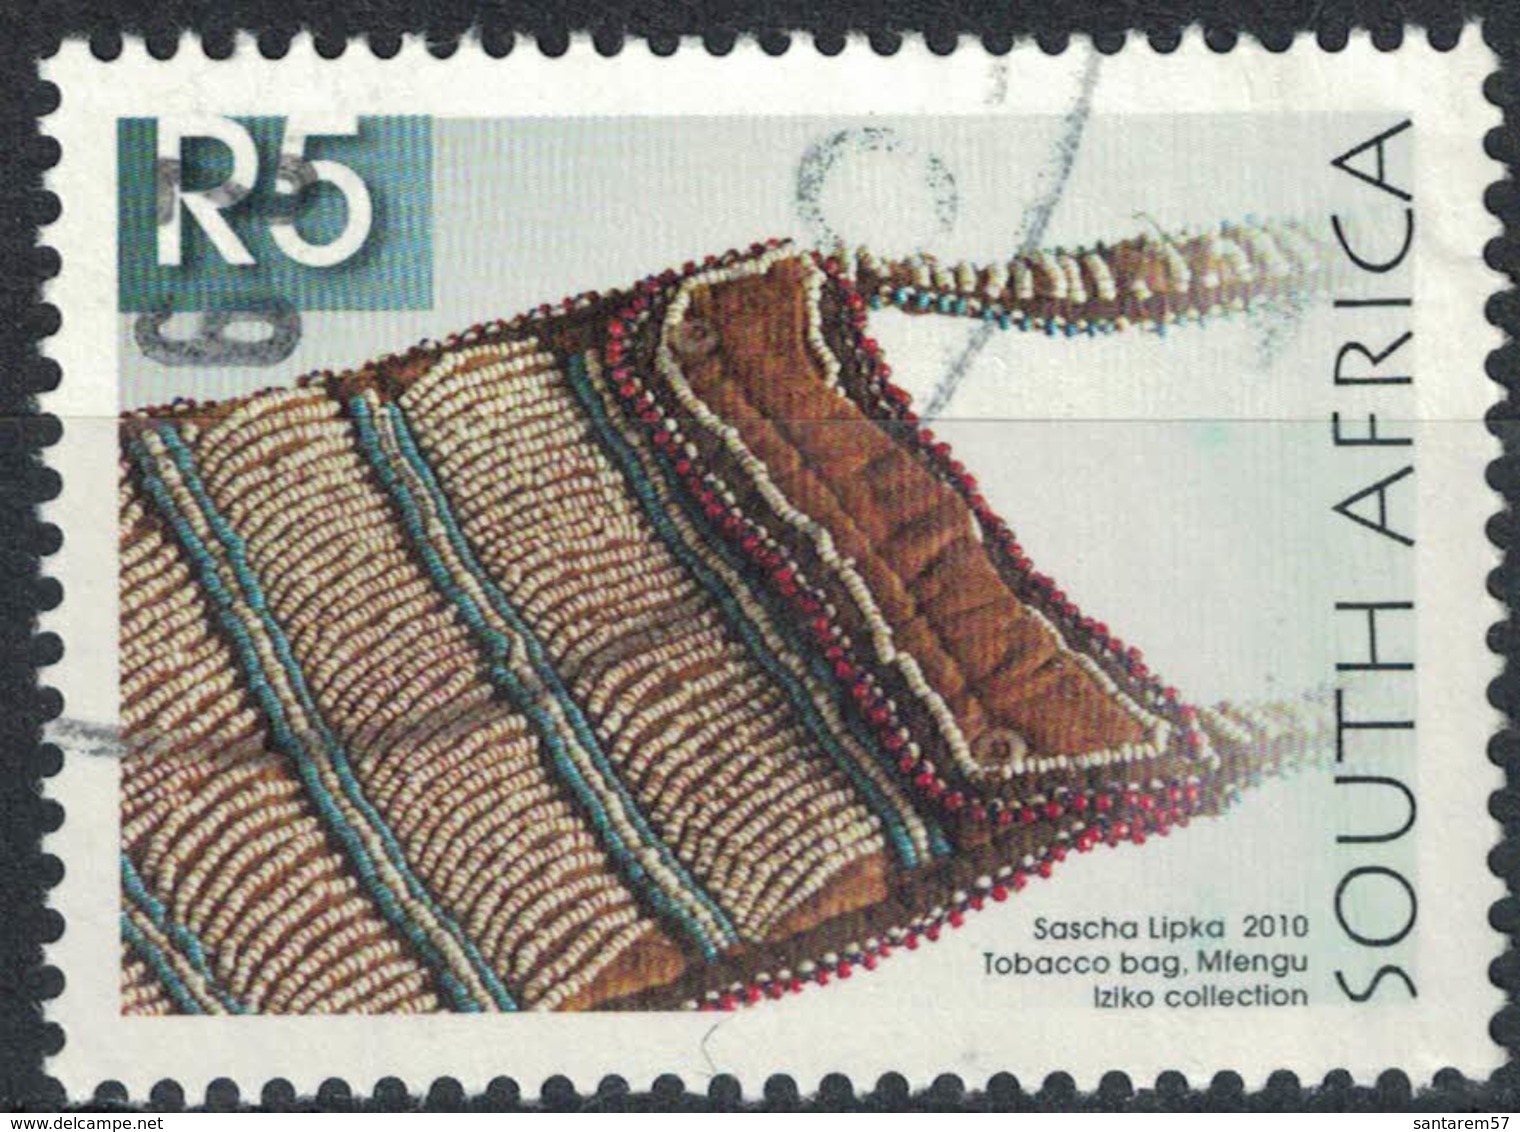 Afrique Du Sud 2010 Oblitération Ronde Used Stamp Sascha Lipka Sac à Tabac Tobacco Bag - Usados